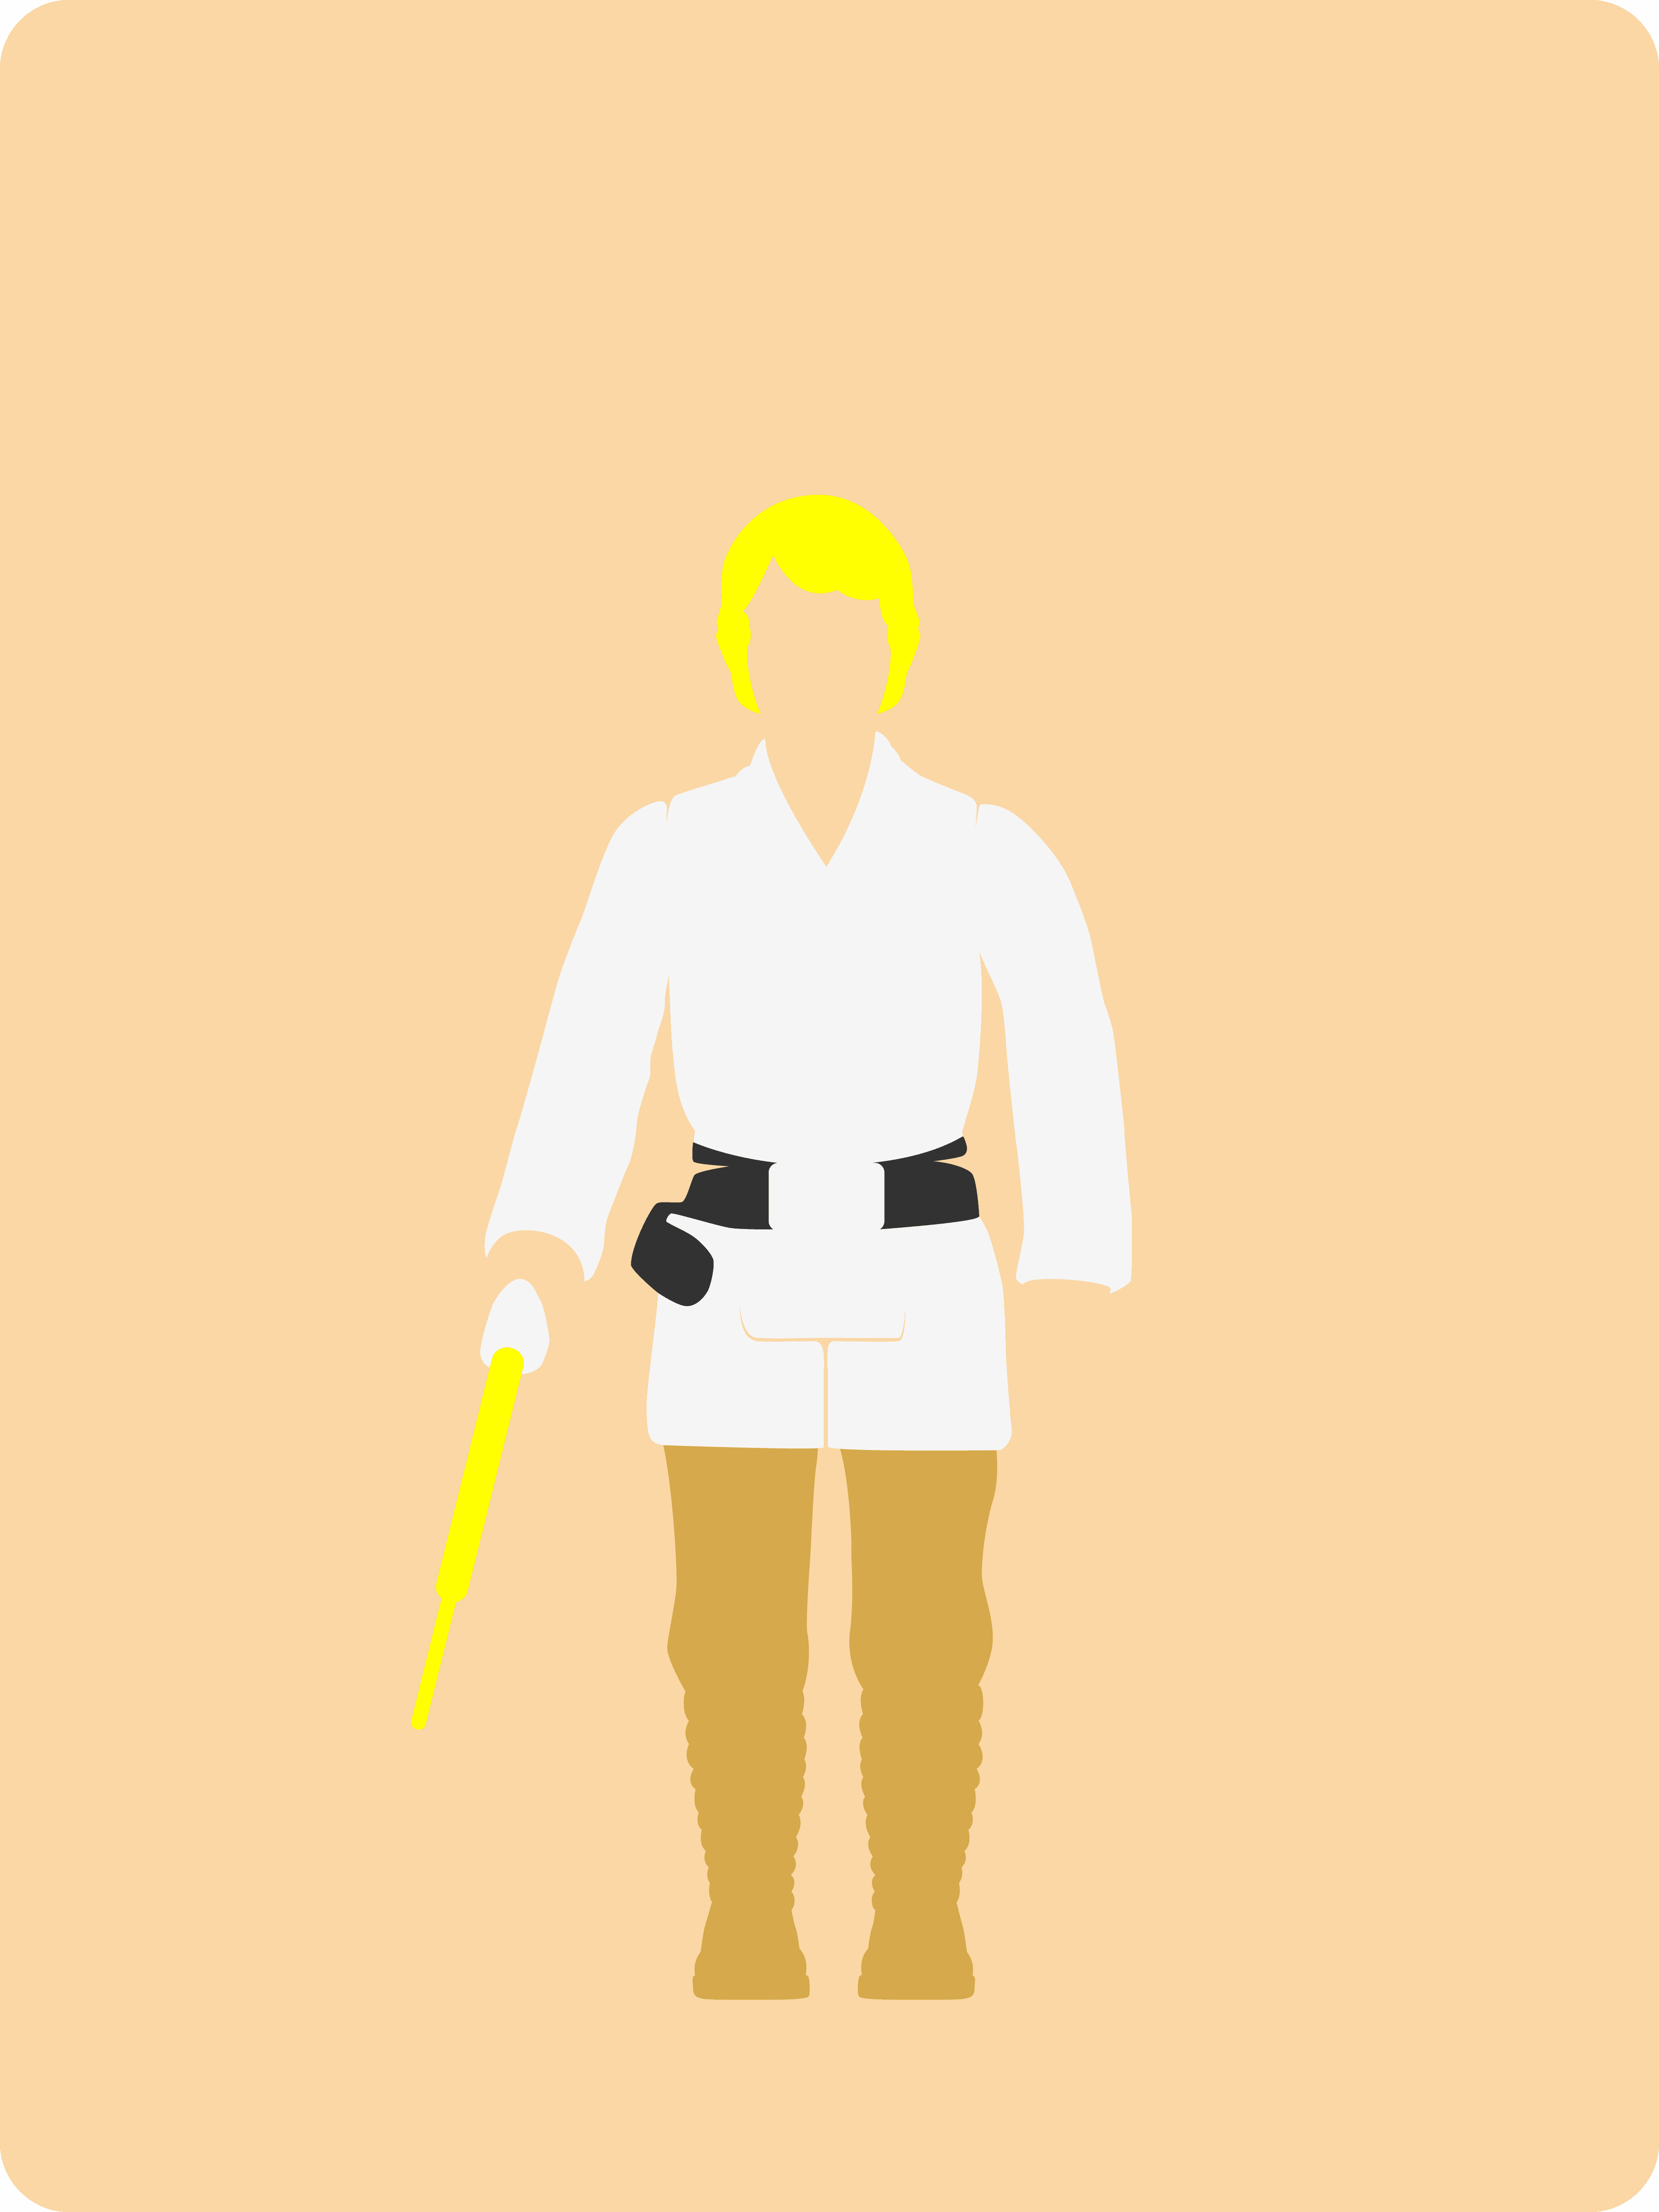 #003 Luke Skywalker